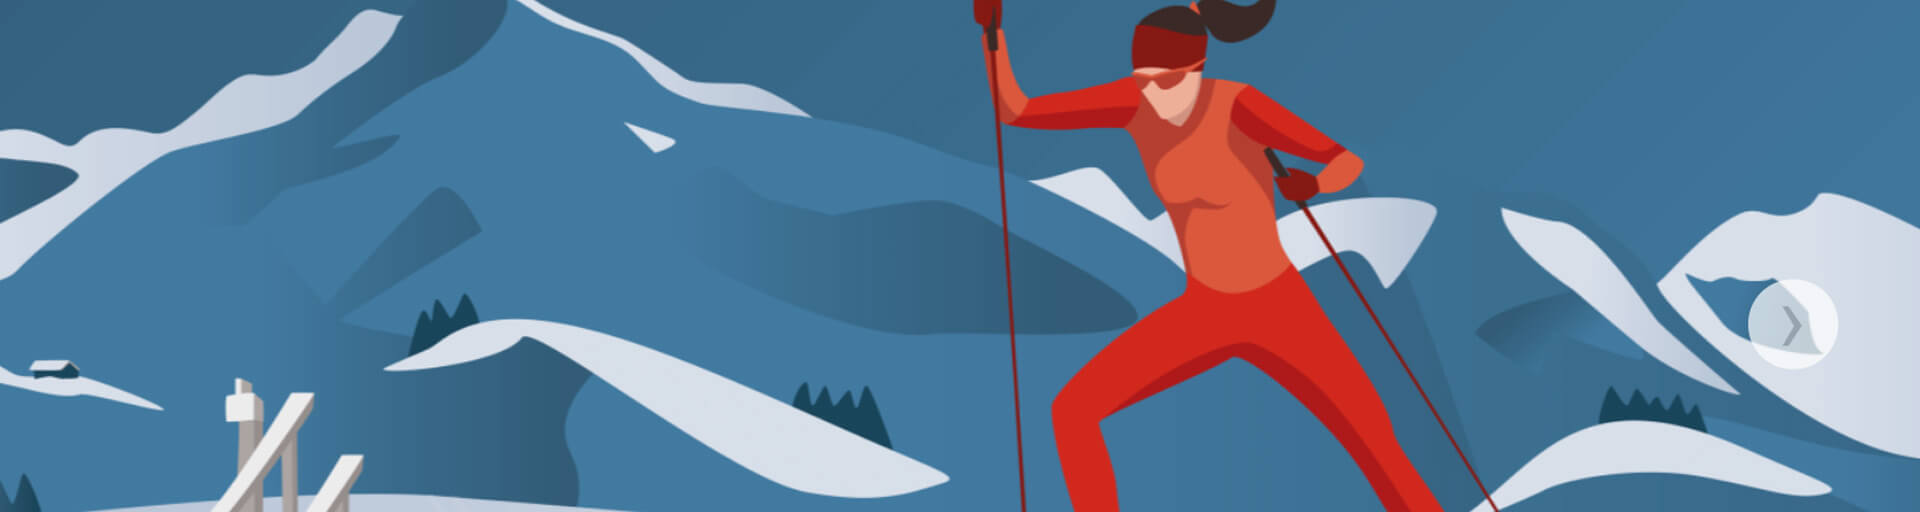 Чемпионат мира по лыжным гонкам 2021: расписание и результаты